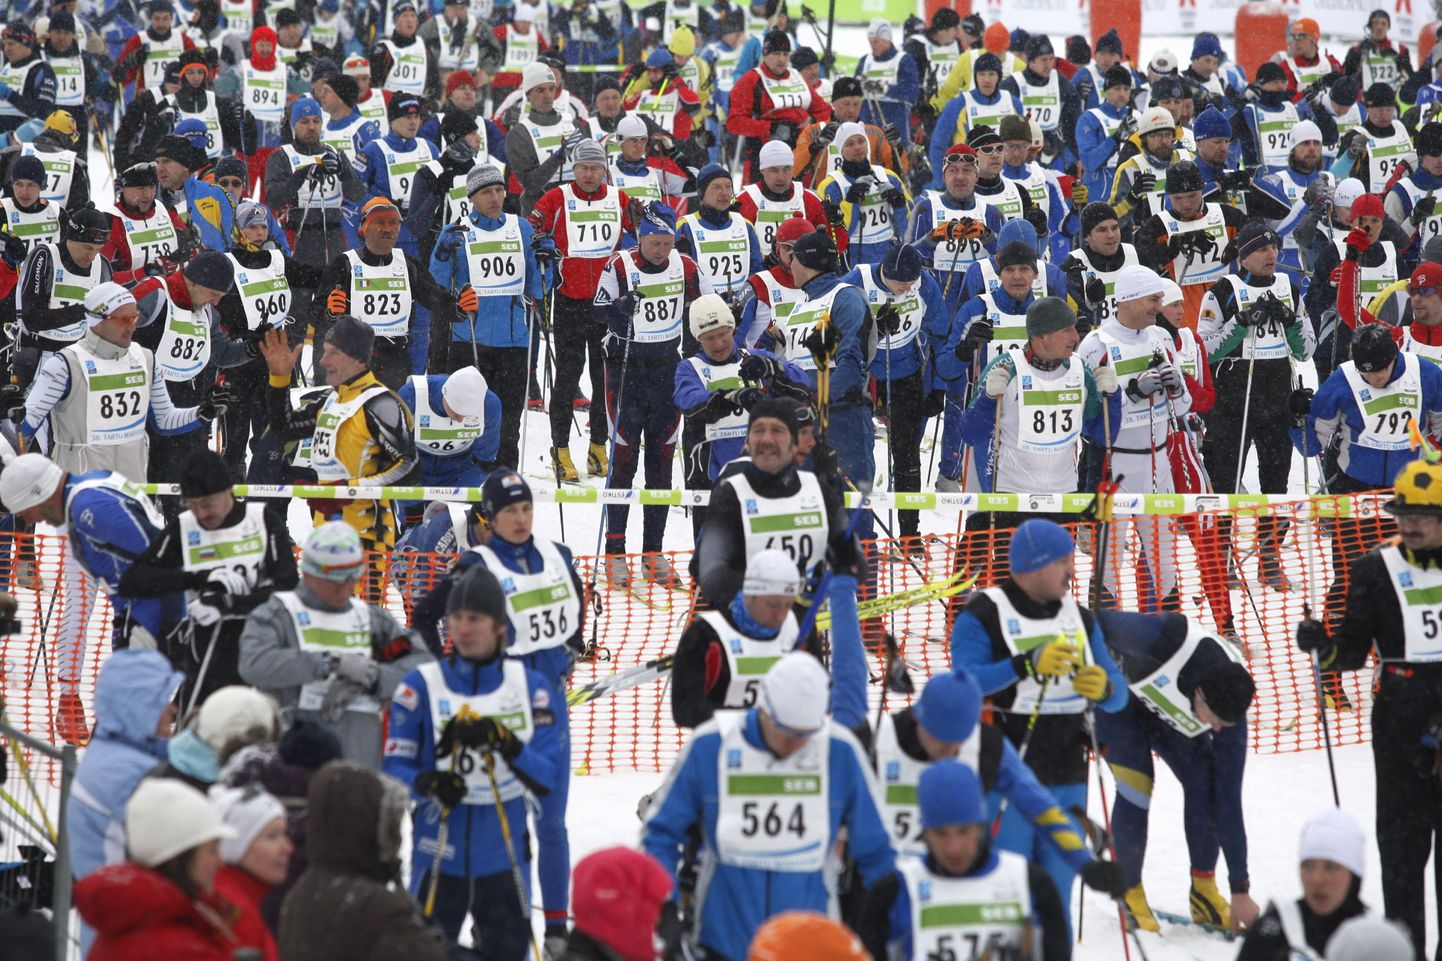 Tartu Maraton võeti 13. maratonina Worldloppeti liikmeks 1994.a.